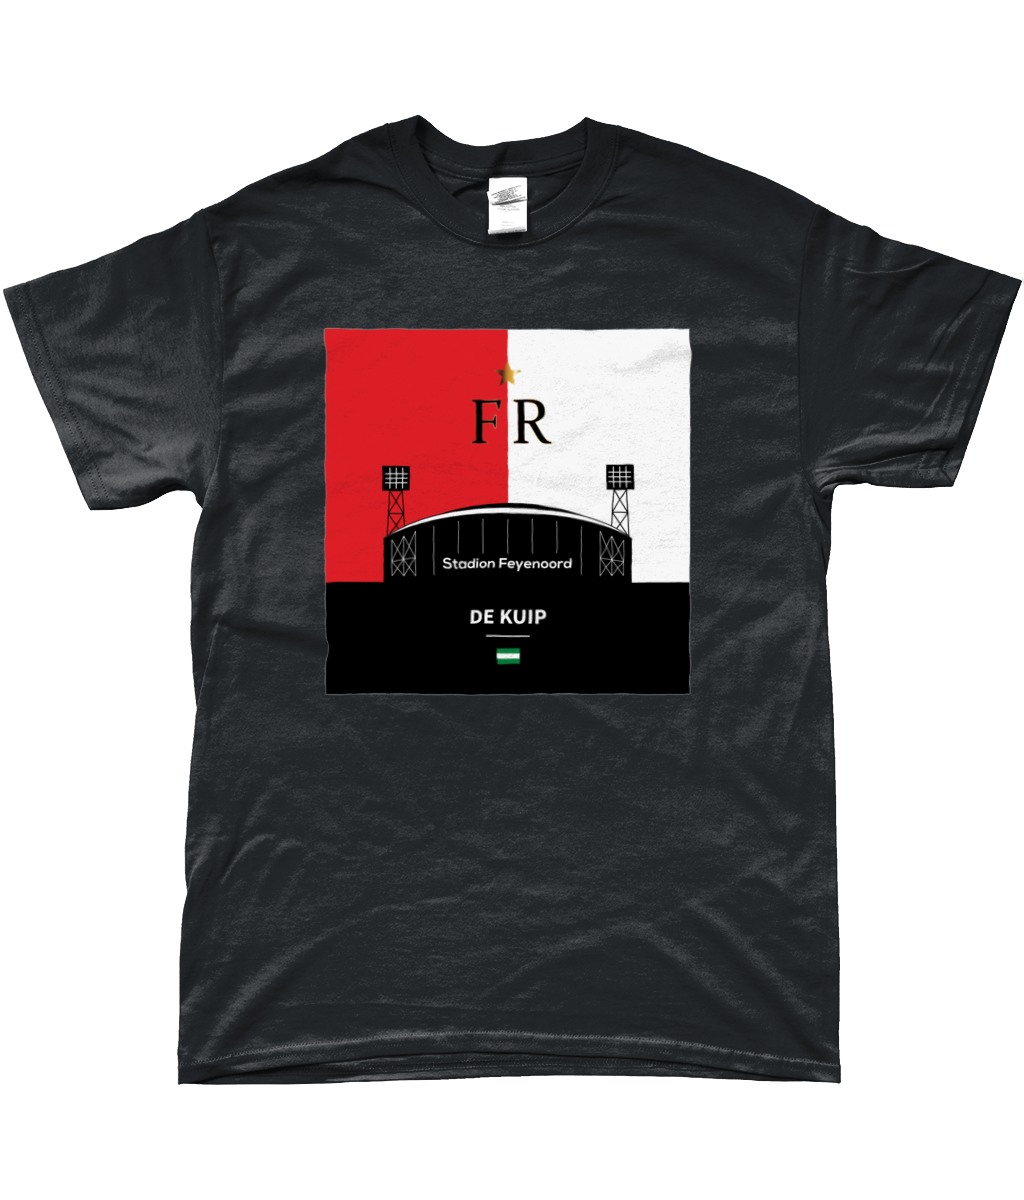 Feyenoord - De Kuip T-Shirt